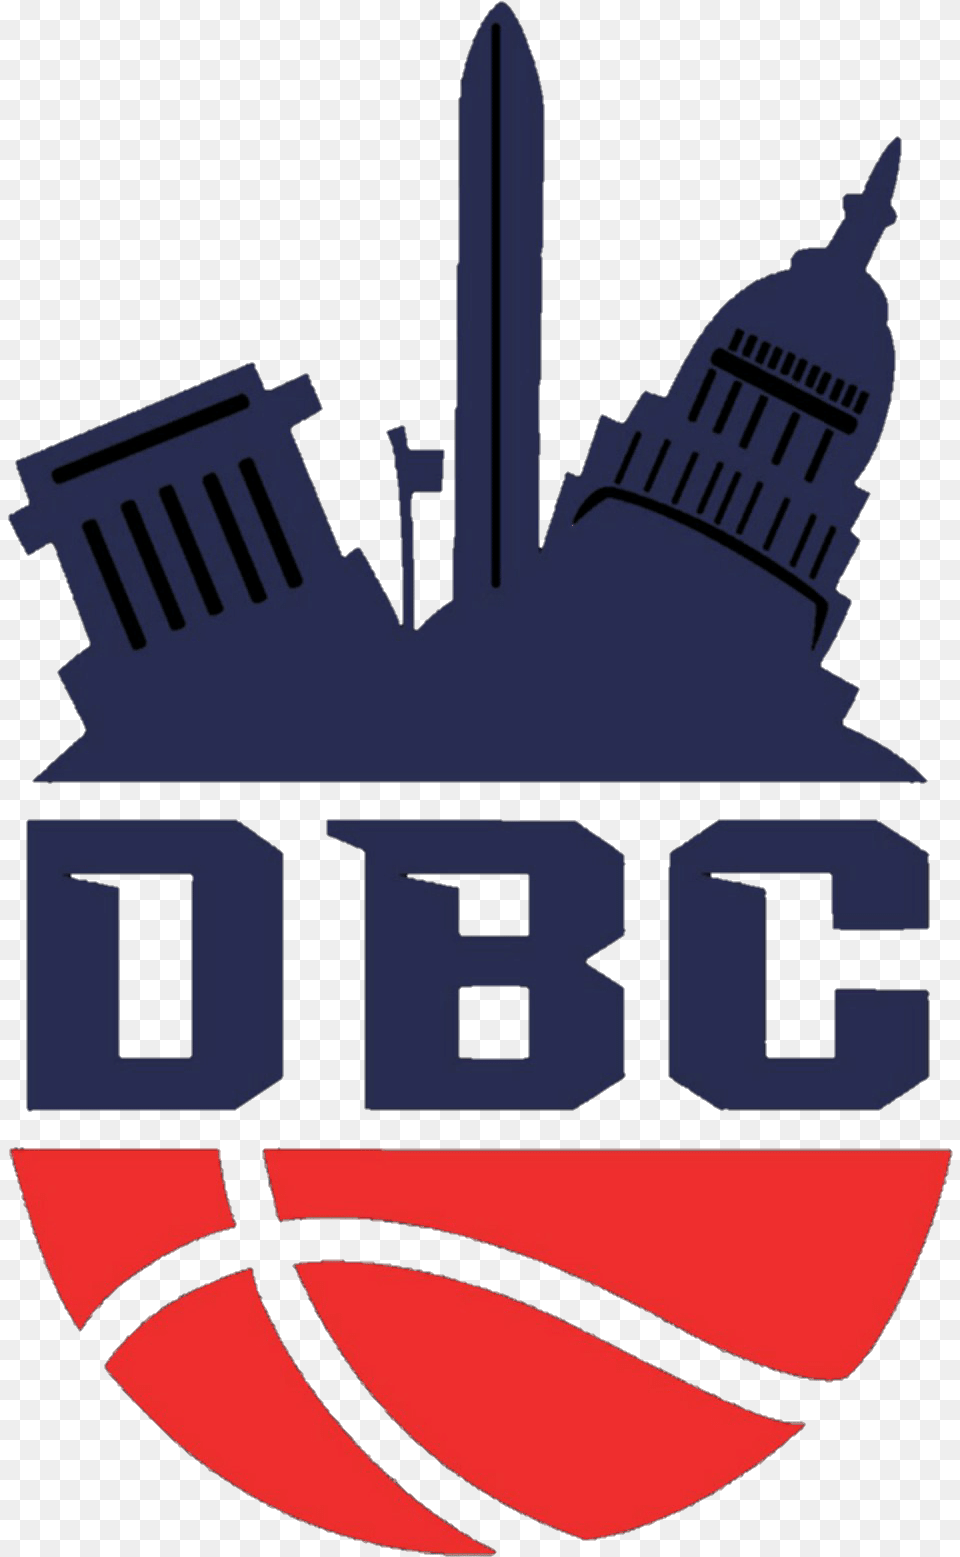 District Basketball Club Sacramento Kings Logo 2017 Png Image